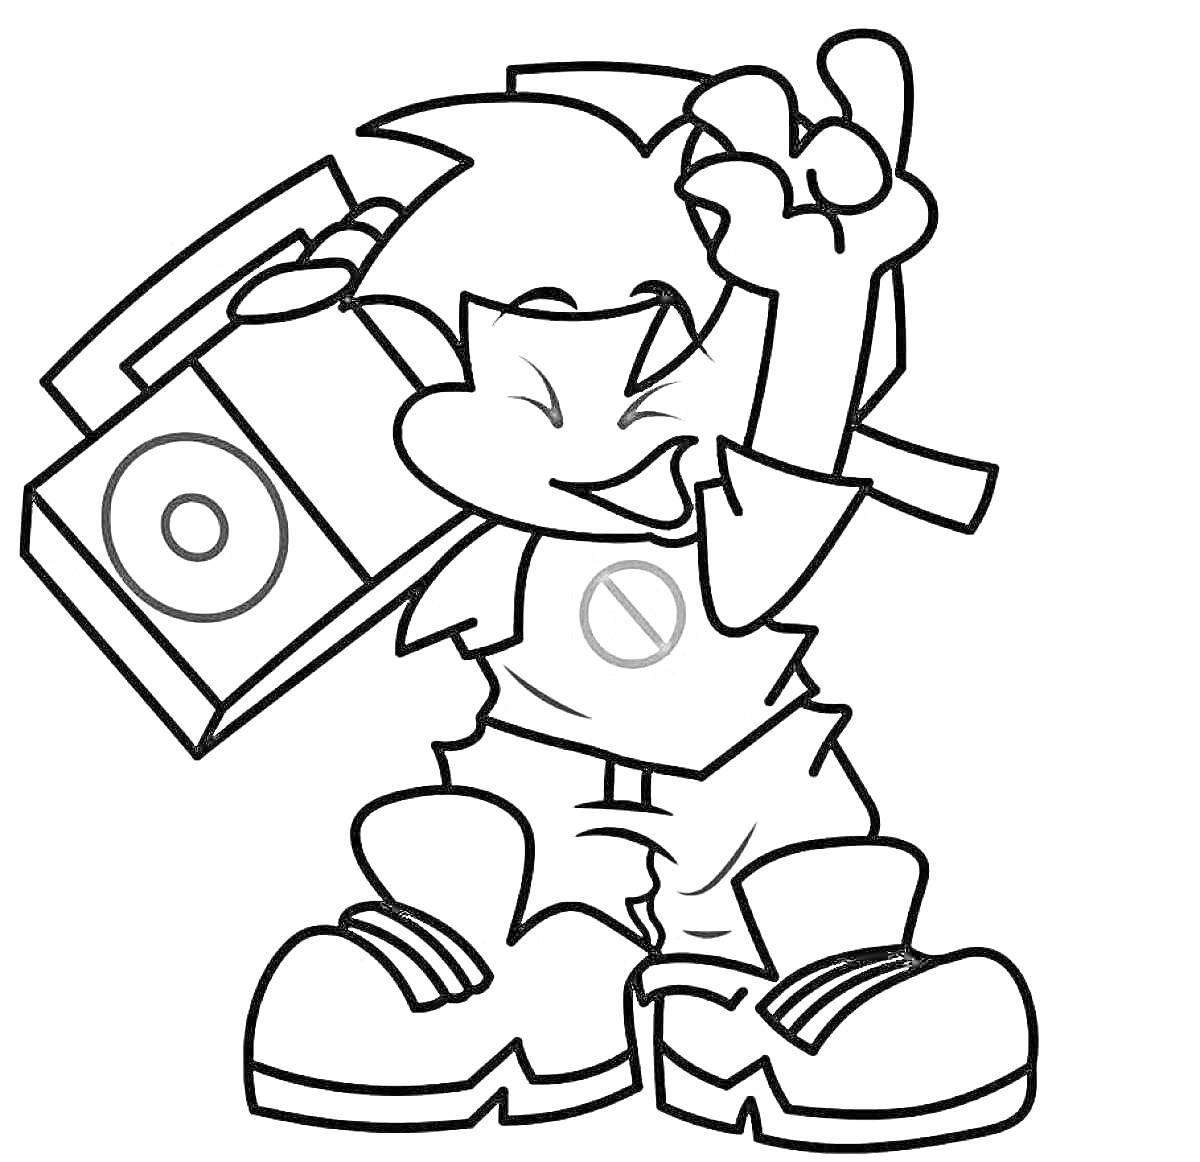 Мальчик с прической, футболкой с эмблемой, шортами и большими кроссовками держит магнитофон и показывает знак победы